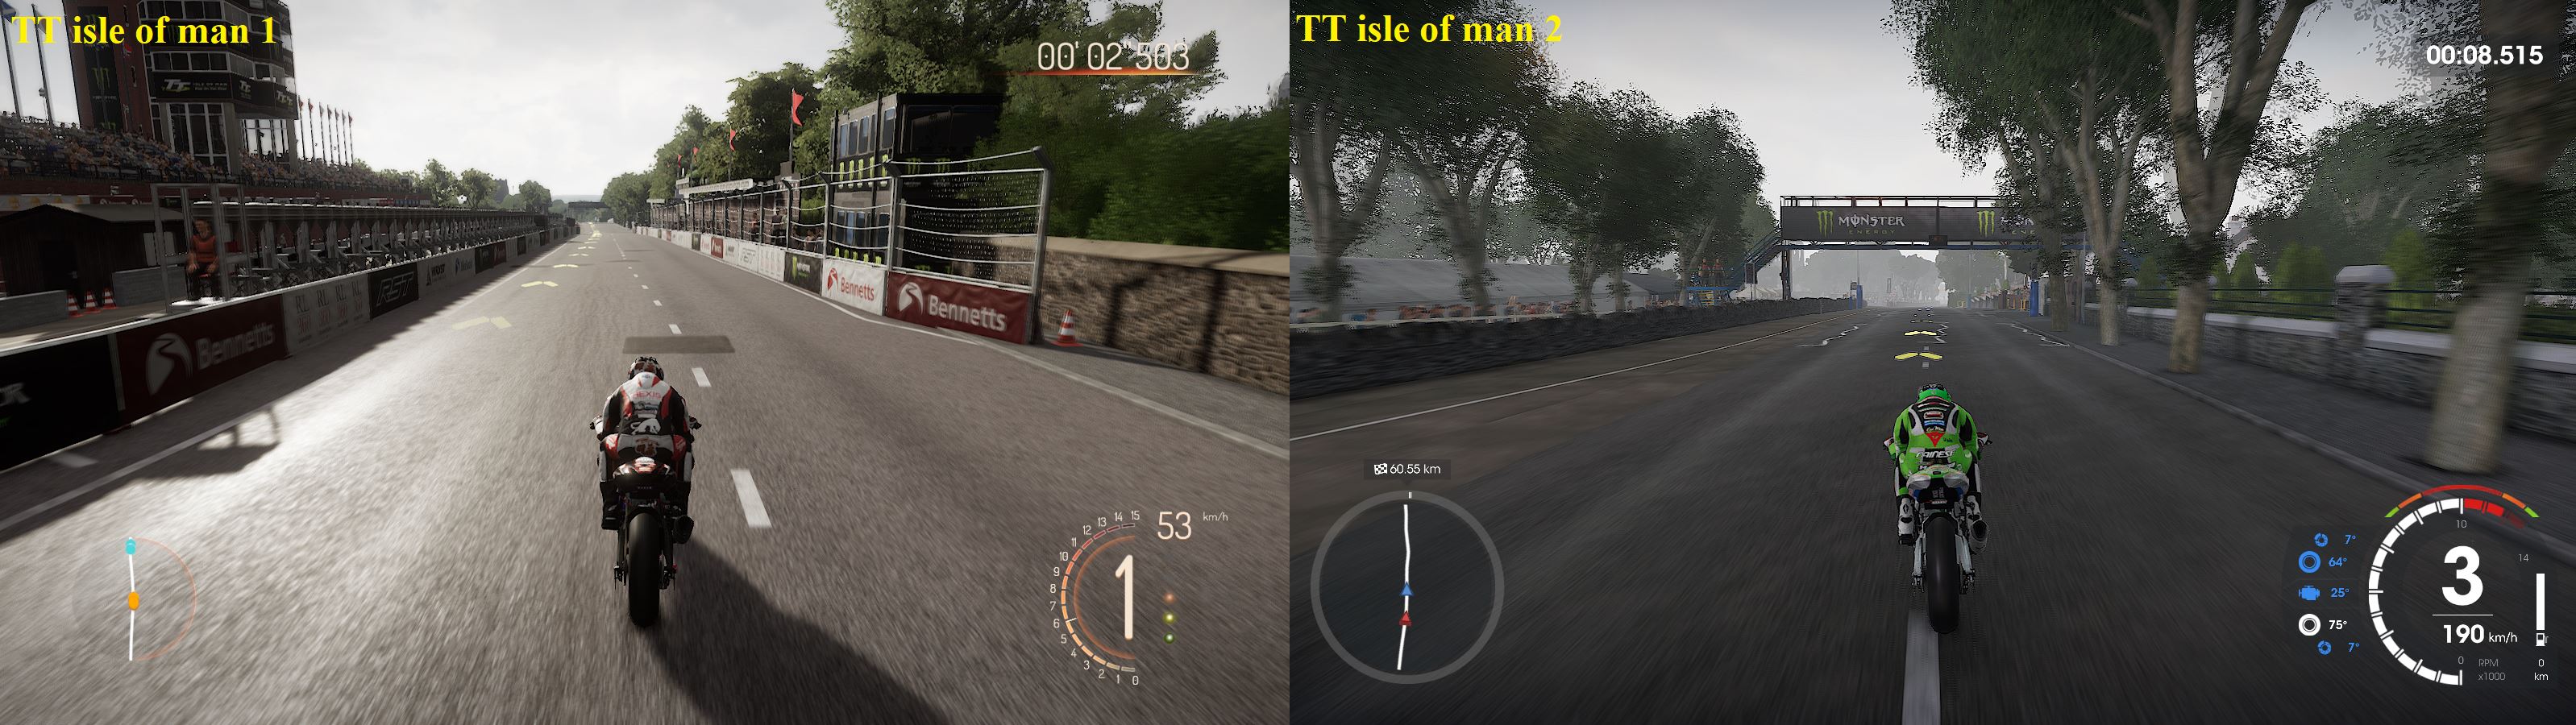 Review game “TT isle of the man 1 vs 2” và cái nhìn chung với dòng game RIDE